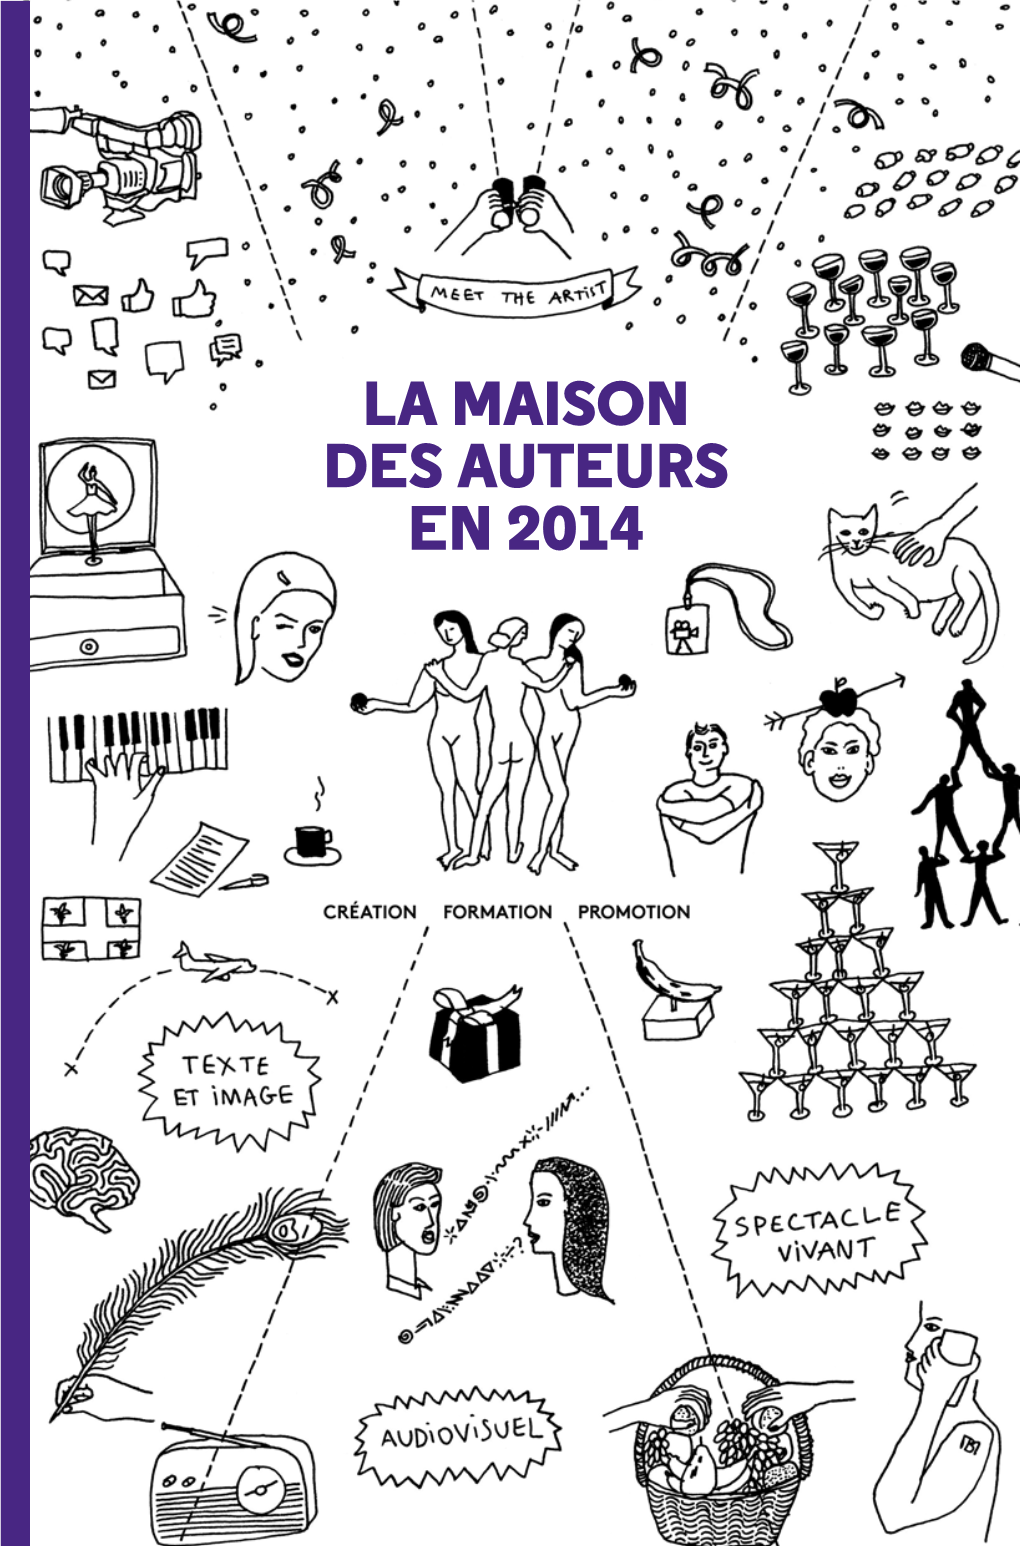 LA MAISON DES AUTEURS EN 2014 « Autonome Et Solidaire » MAISON DES AUTEURS PROJETS, PÉDAGOGIES ET OBSTINATIONS